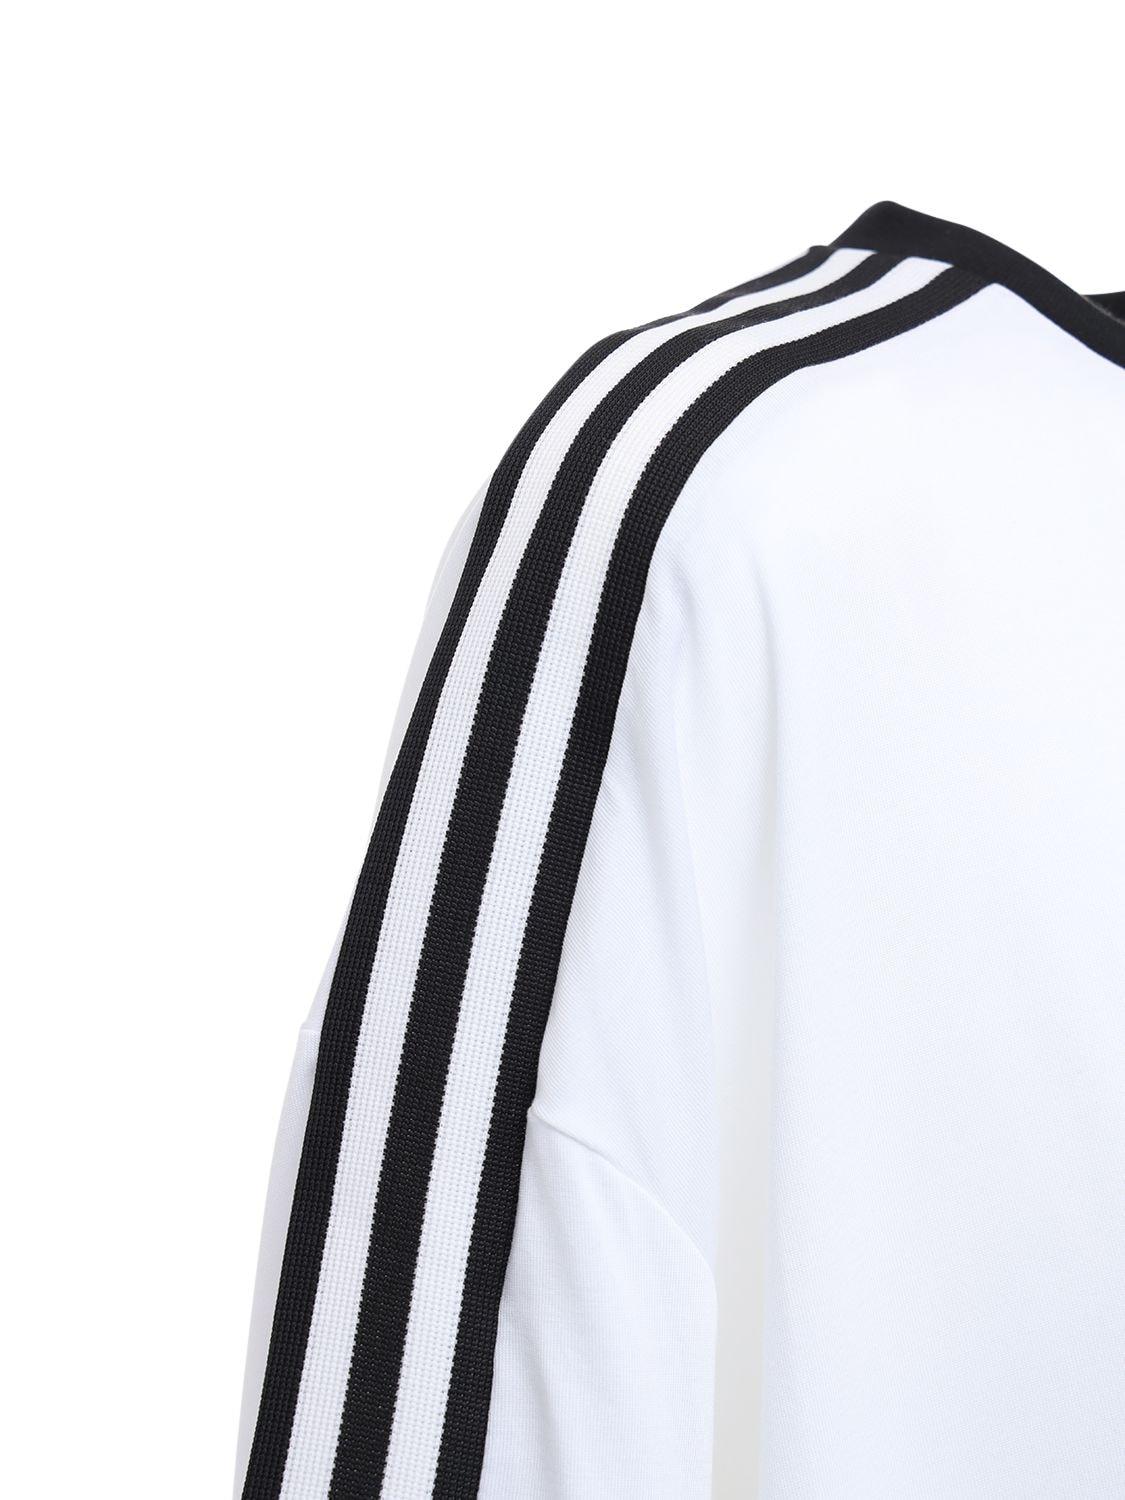 adidas Originals 70s 3 Stripes Logo Jersey in White - Lyst